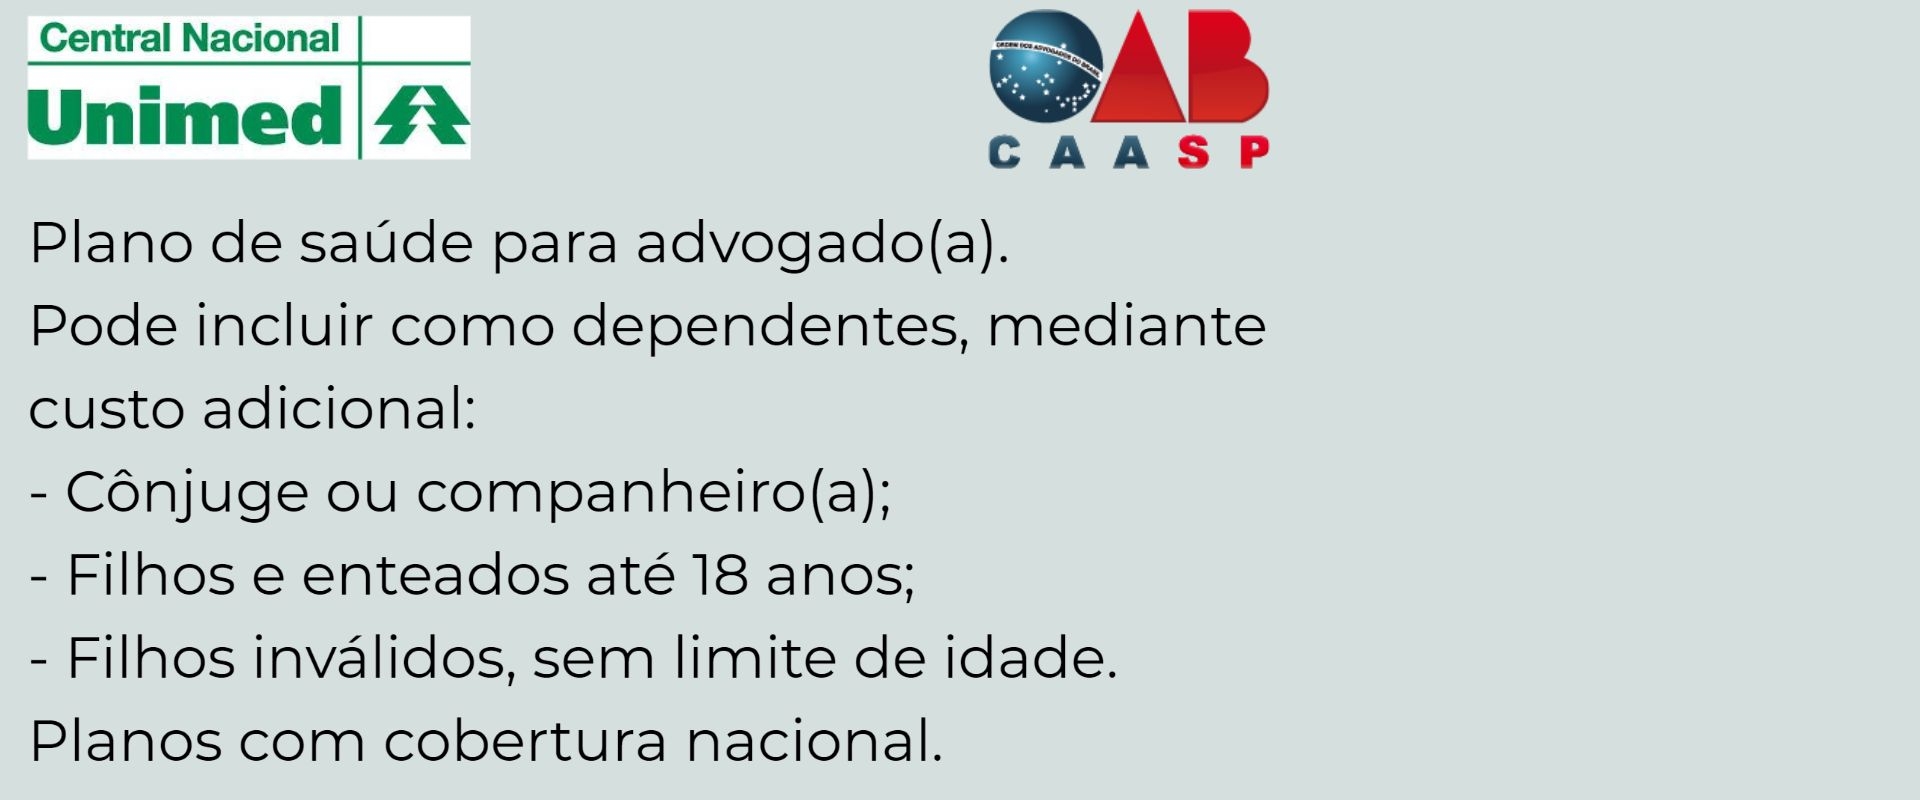 Unimed CAASP Araçatuba